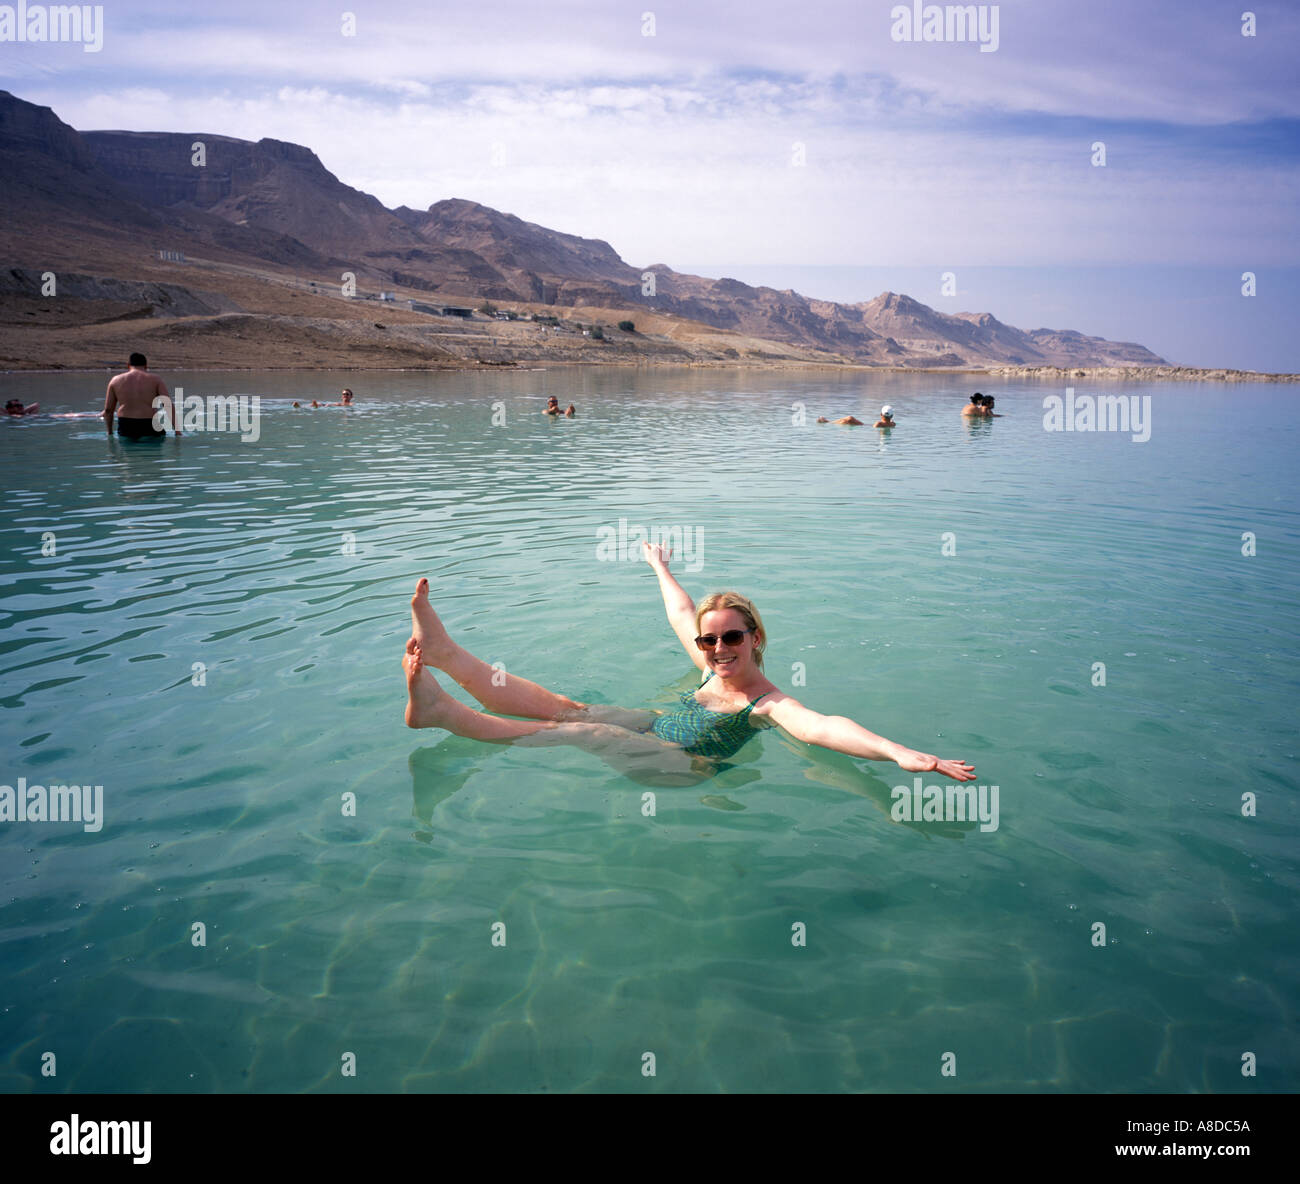 Une fille flotte dans la mer Morte Israël Banque D'Images